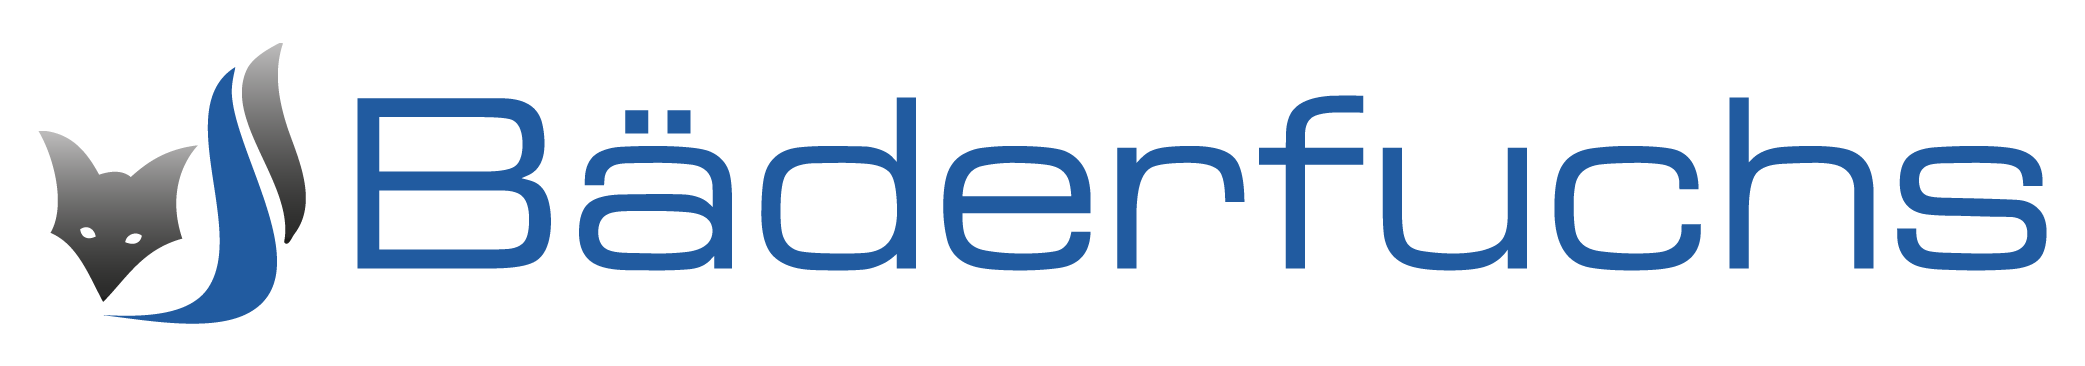 Baederfuchs_Logo